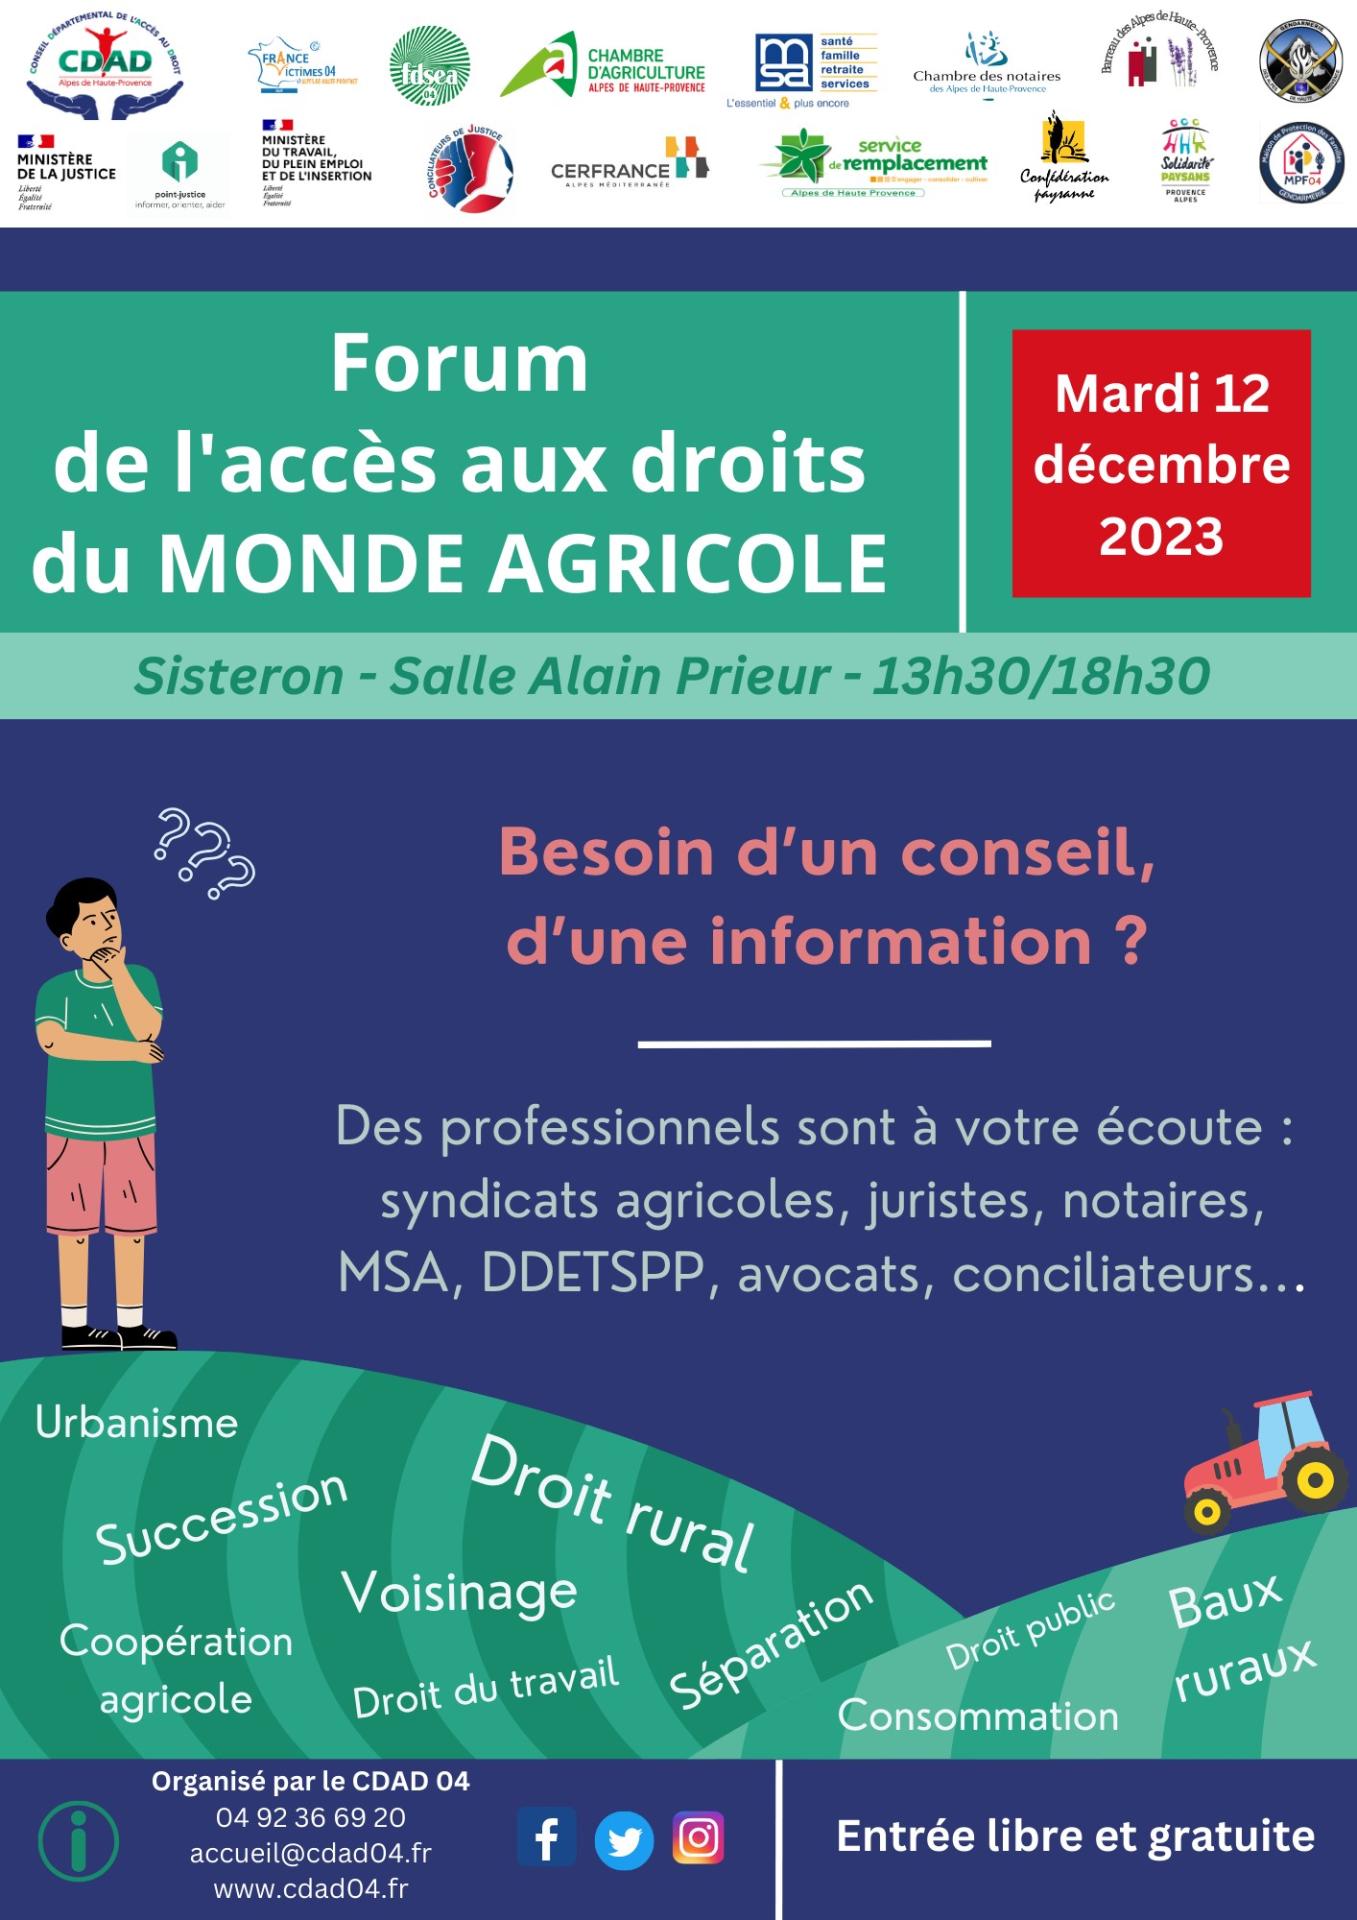 Forum d acces au droit du monde agricole 12 decembre 2023